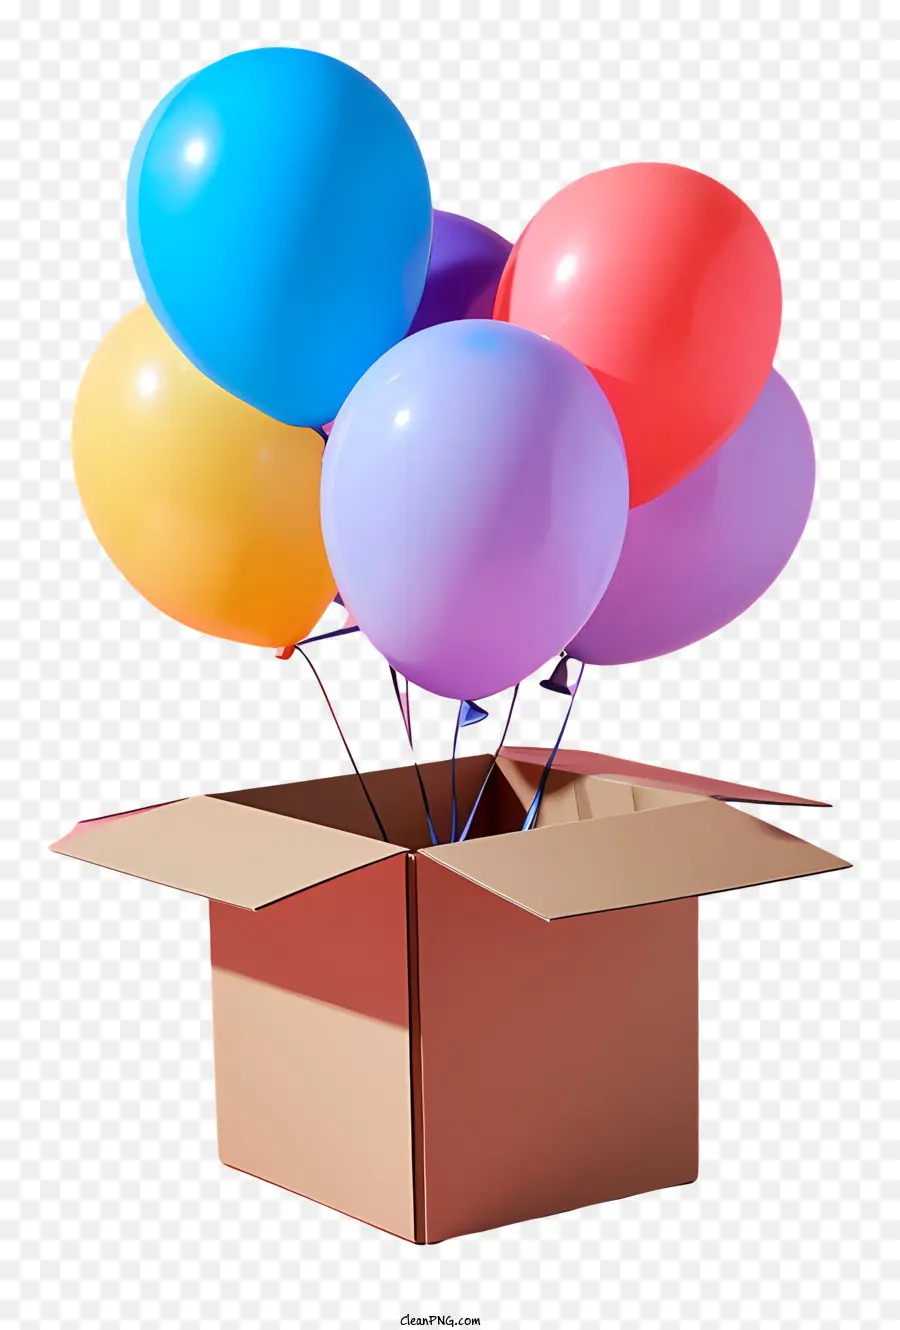 Karton - Karton mit farbenfrohen schwimmenden Luftballons gefüllt